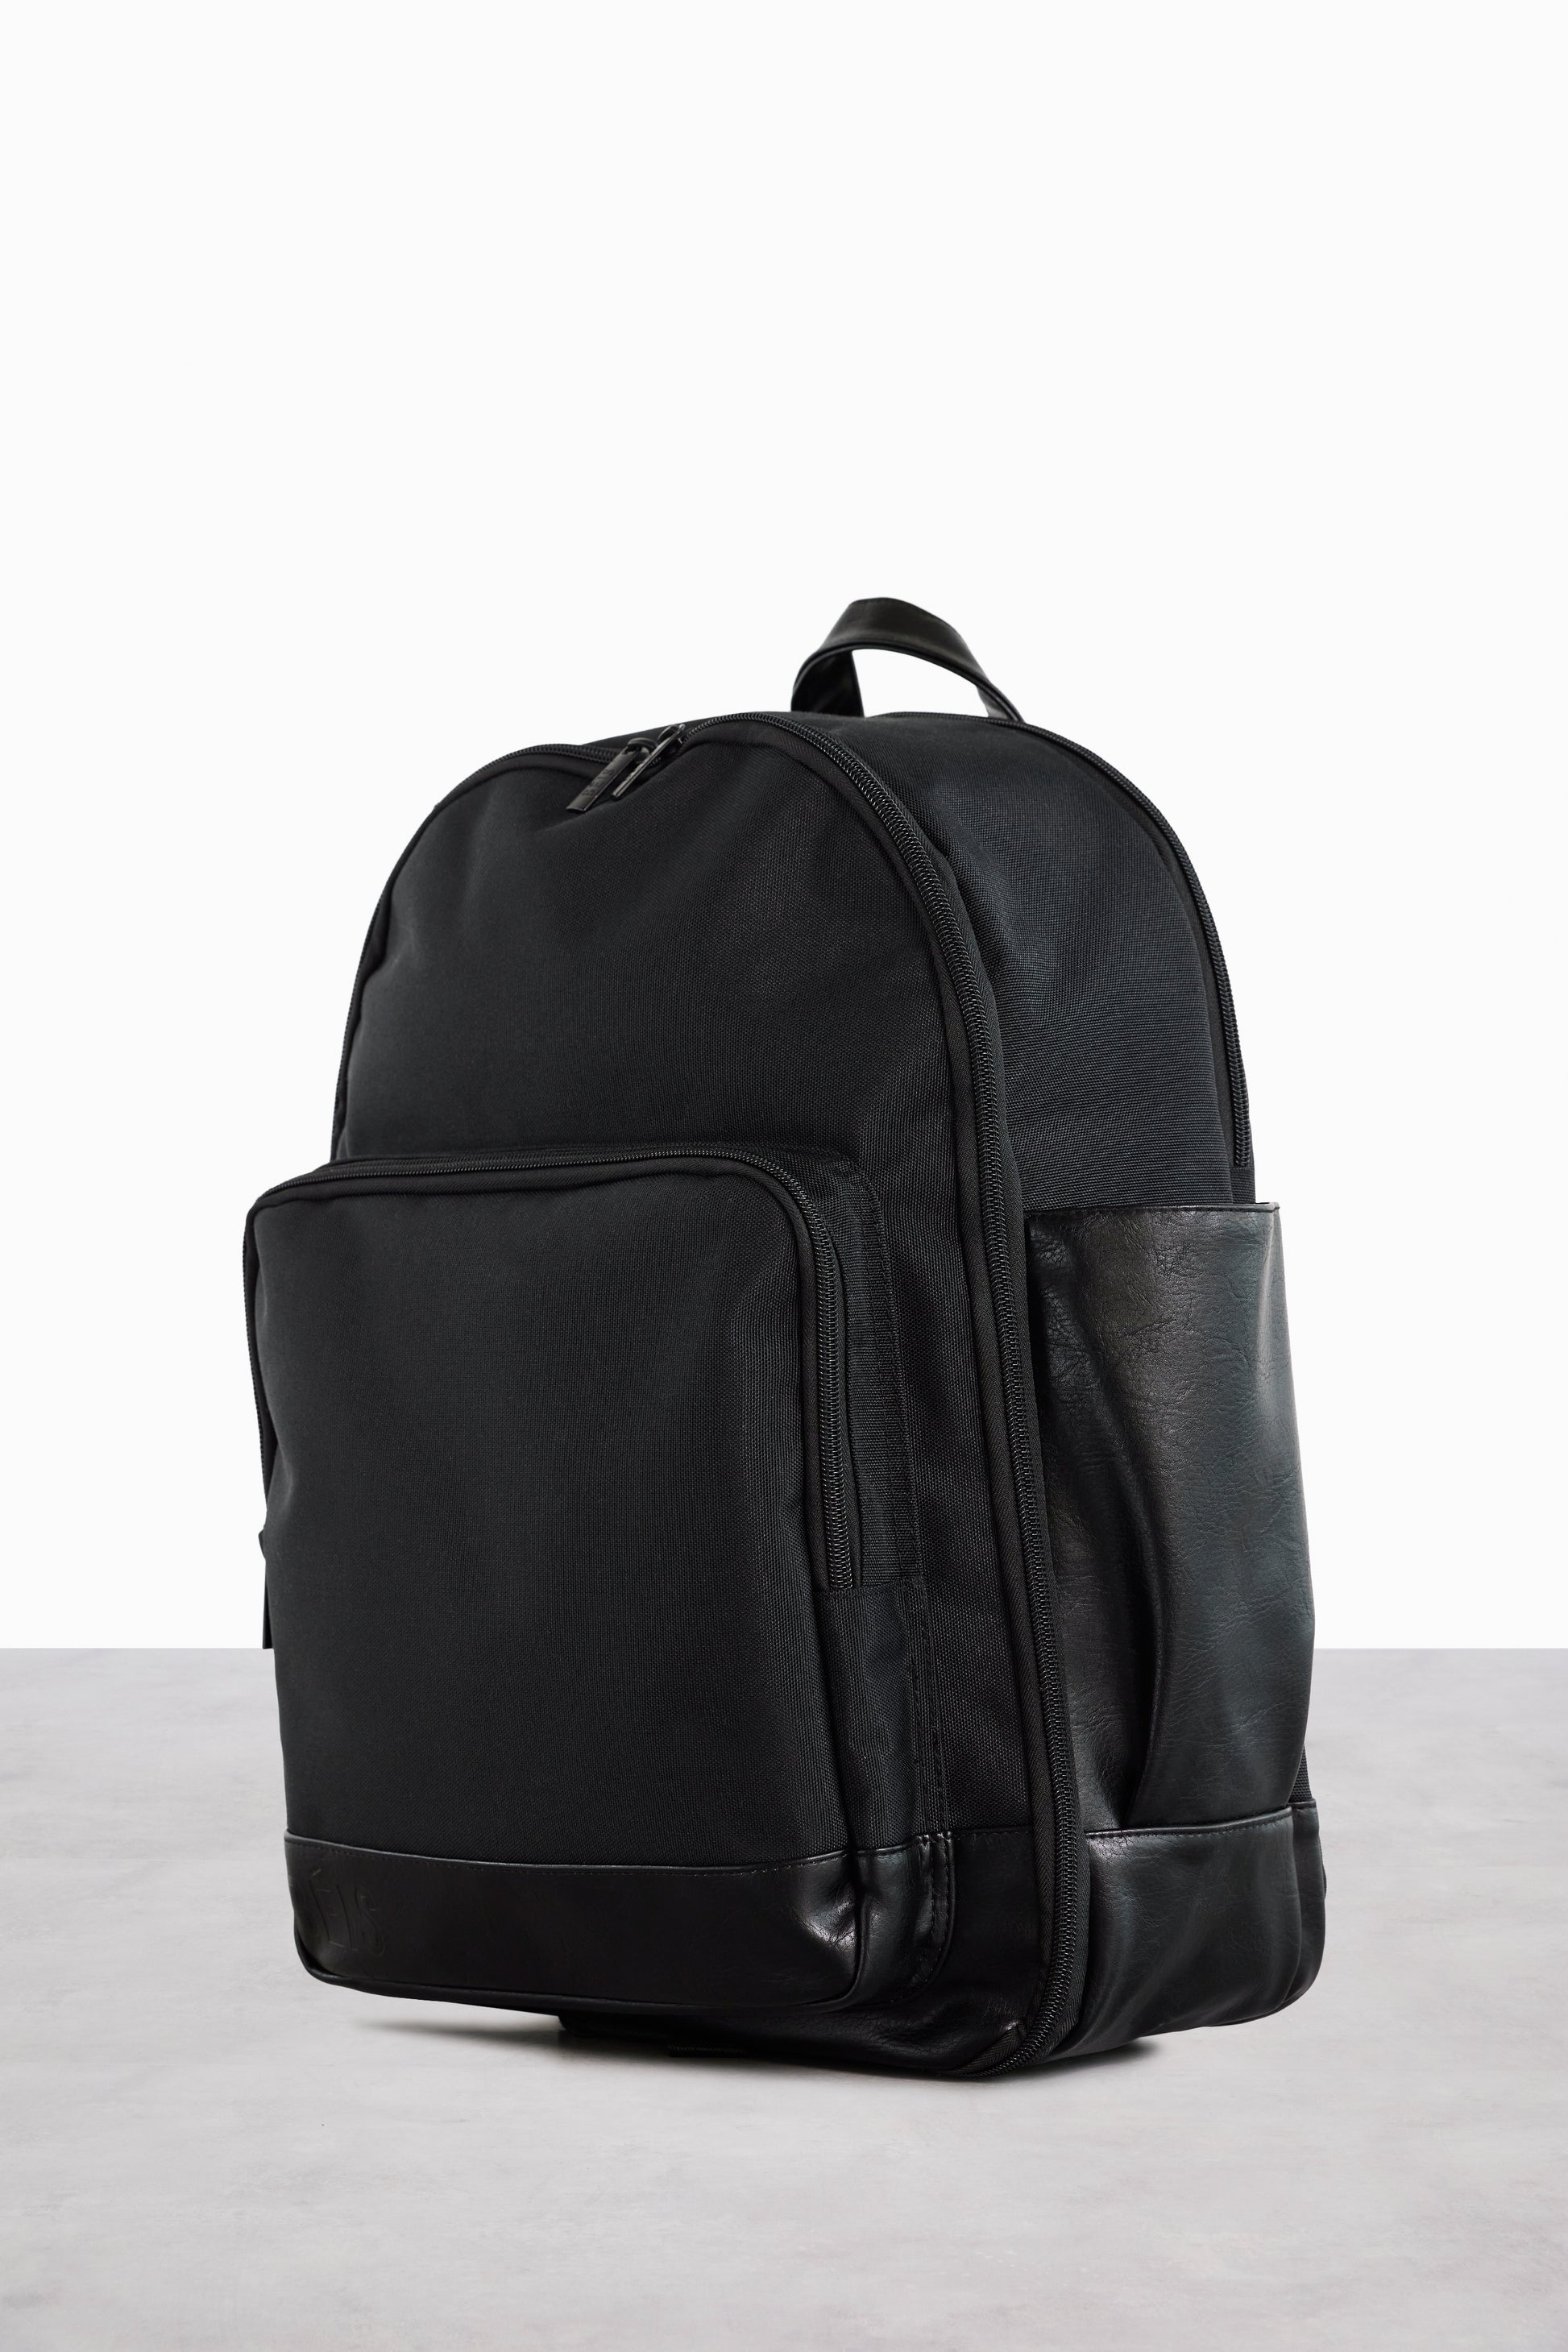 BÉIS 'The Backpack' in Black - Black Travel Backpack & Laptop Backpack